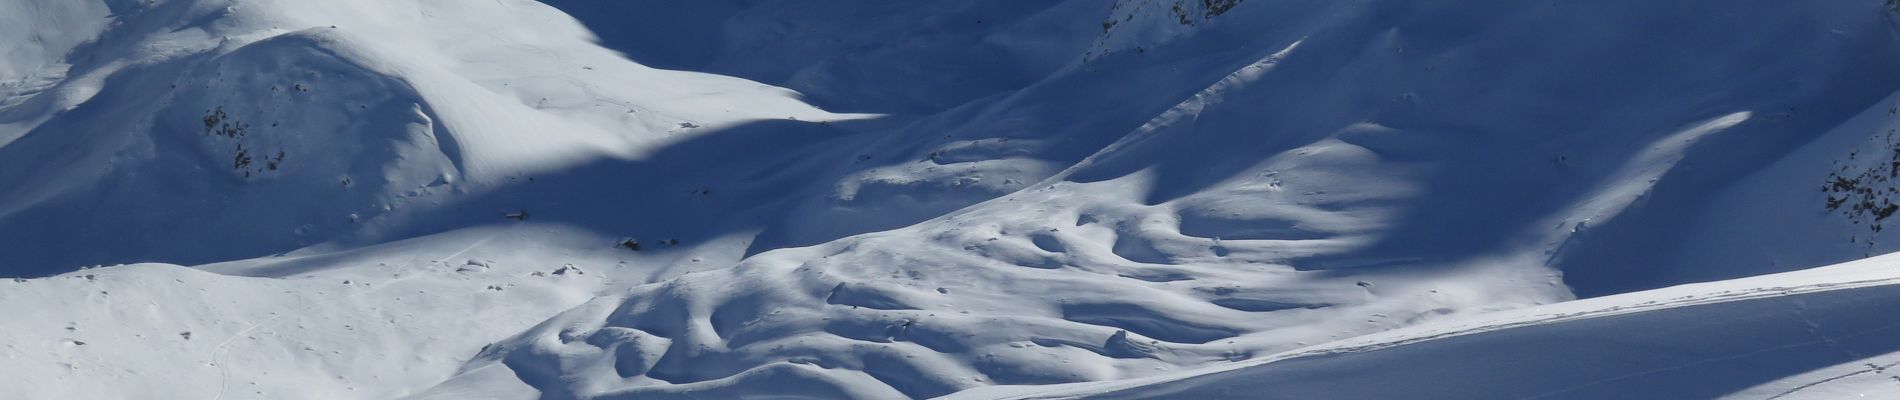 Randonnée Ski de randonnée Saint-Paul-sur-Ubaye - L'Aiguille Large à ski - Photo